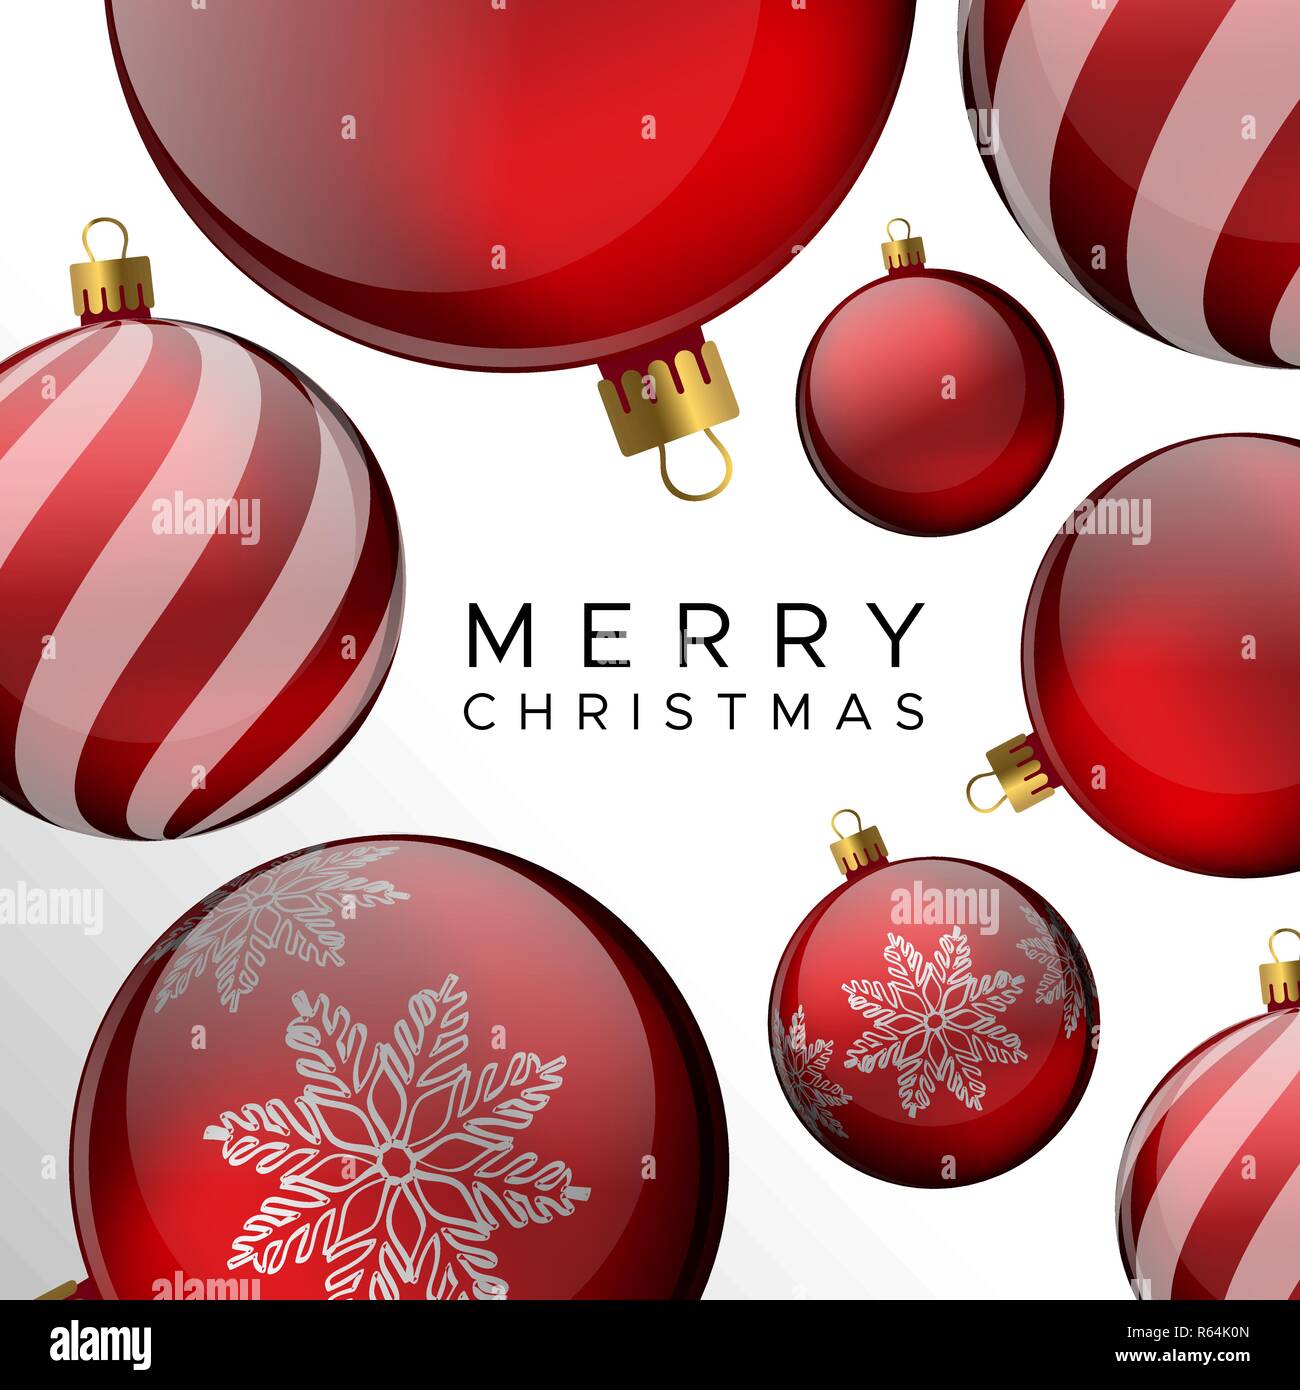 Frohe Weihnachten Karte, rote Weihnachtskugel ornament Urlaub Hintergrund für die Einladung oder Jahreszeiten Gruß. Stock Vektor